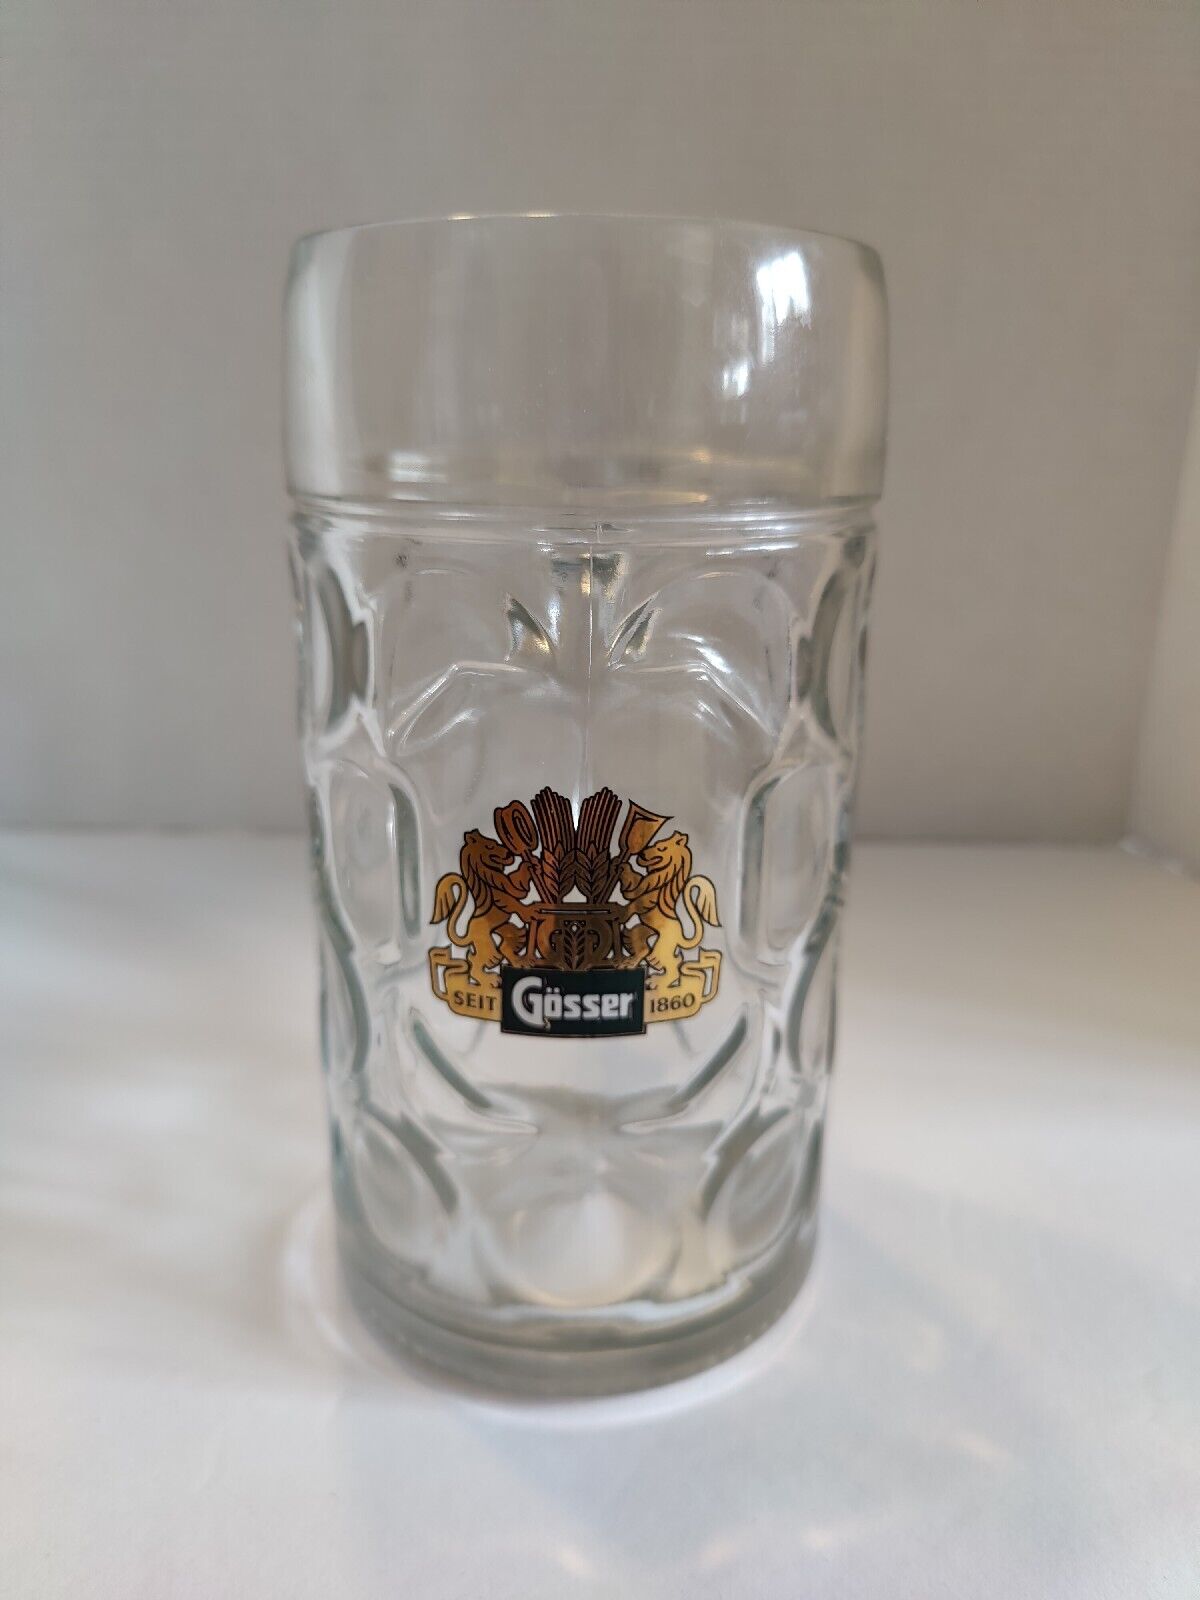 Gosser Large Glass Stein, 40 Oz EXC, Austria